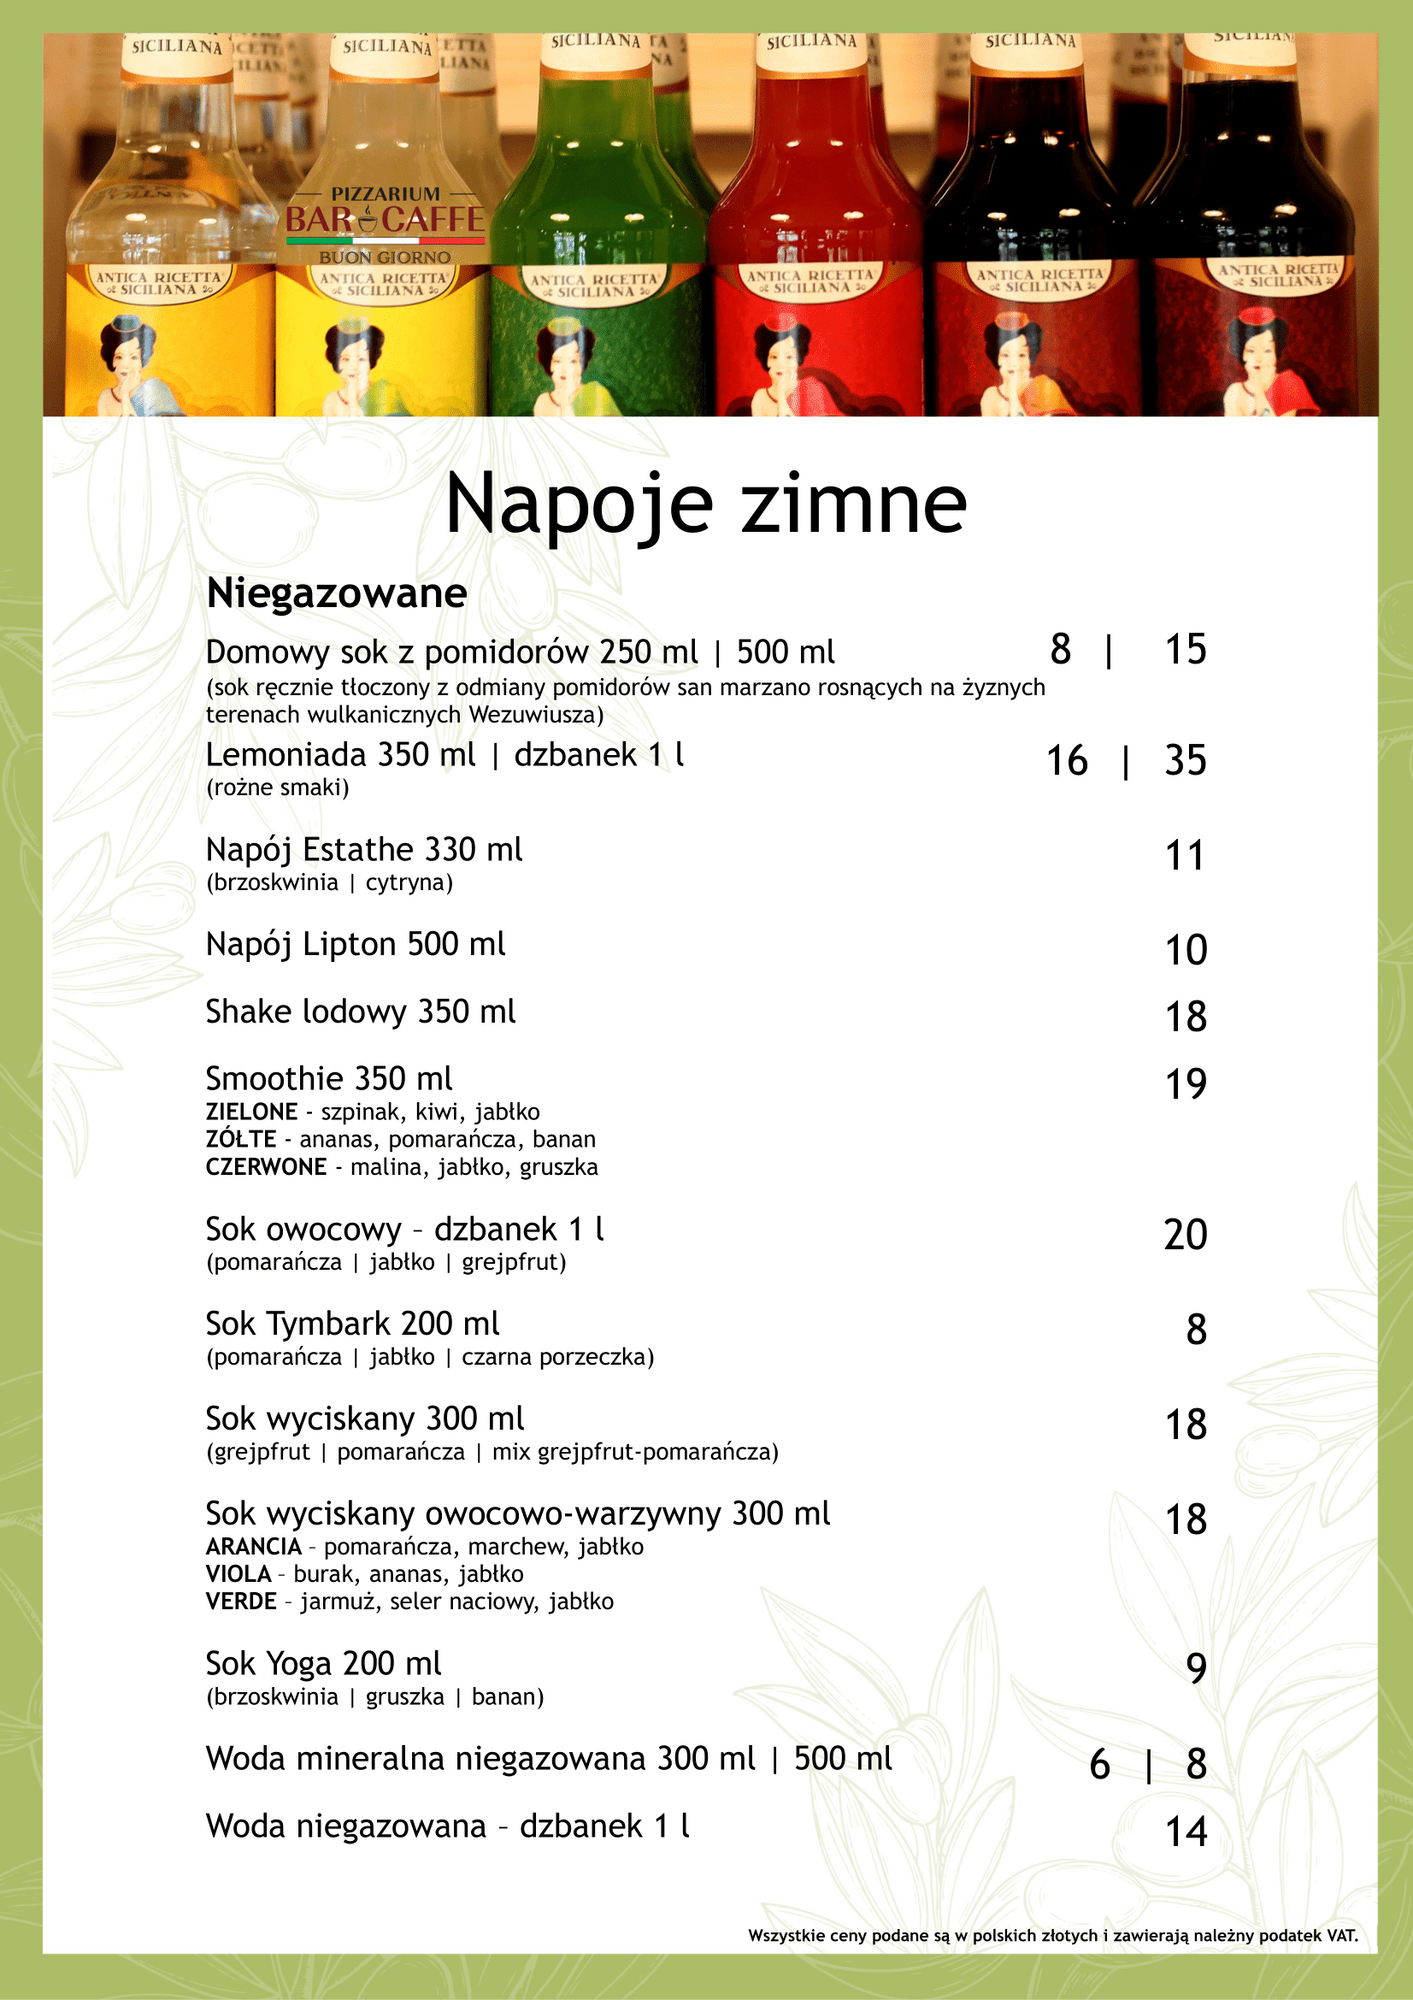 Images Bar Caffe Buongiorno - restauracja - pizzeria Kęty